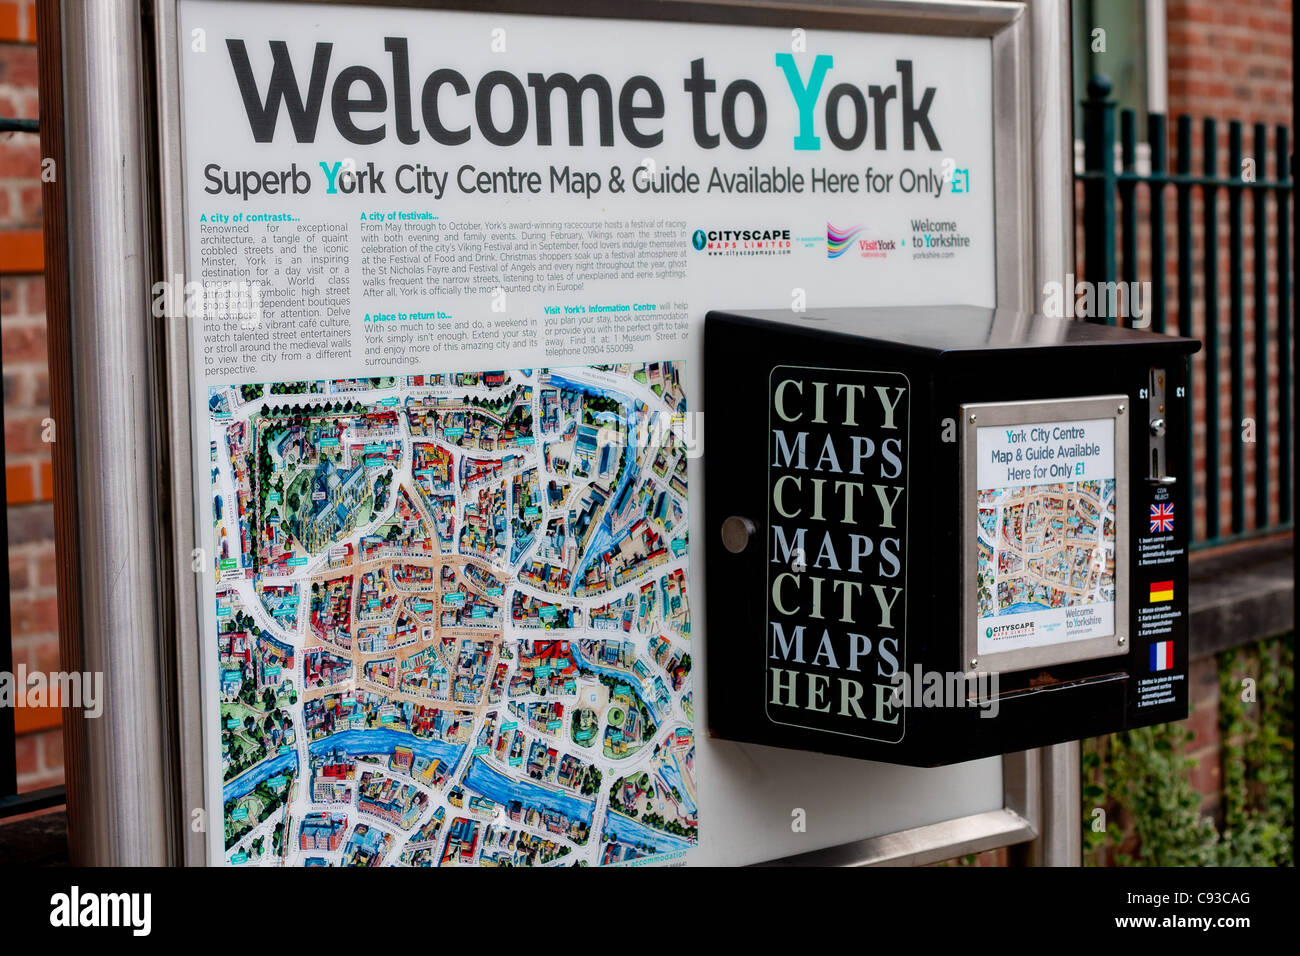 Willkommen Sie in York, Stadt, verkaufen Karten für die Tourismusbranche für Besucher, die in York, Yorkshire Sehenswürdigkeiten sind. Stockfoto